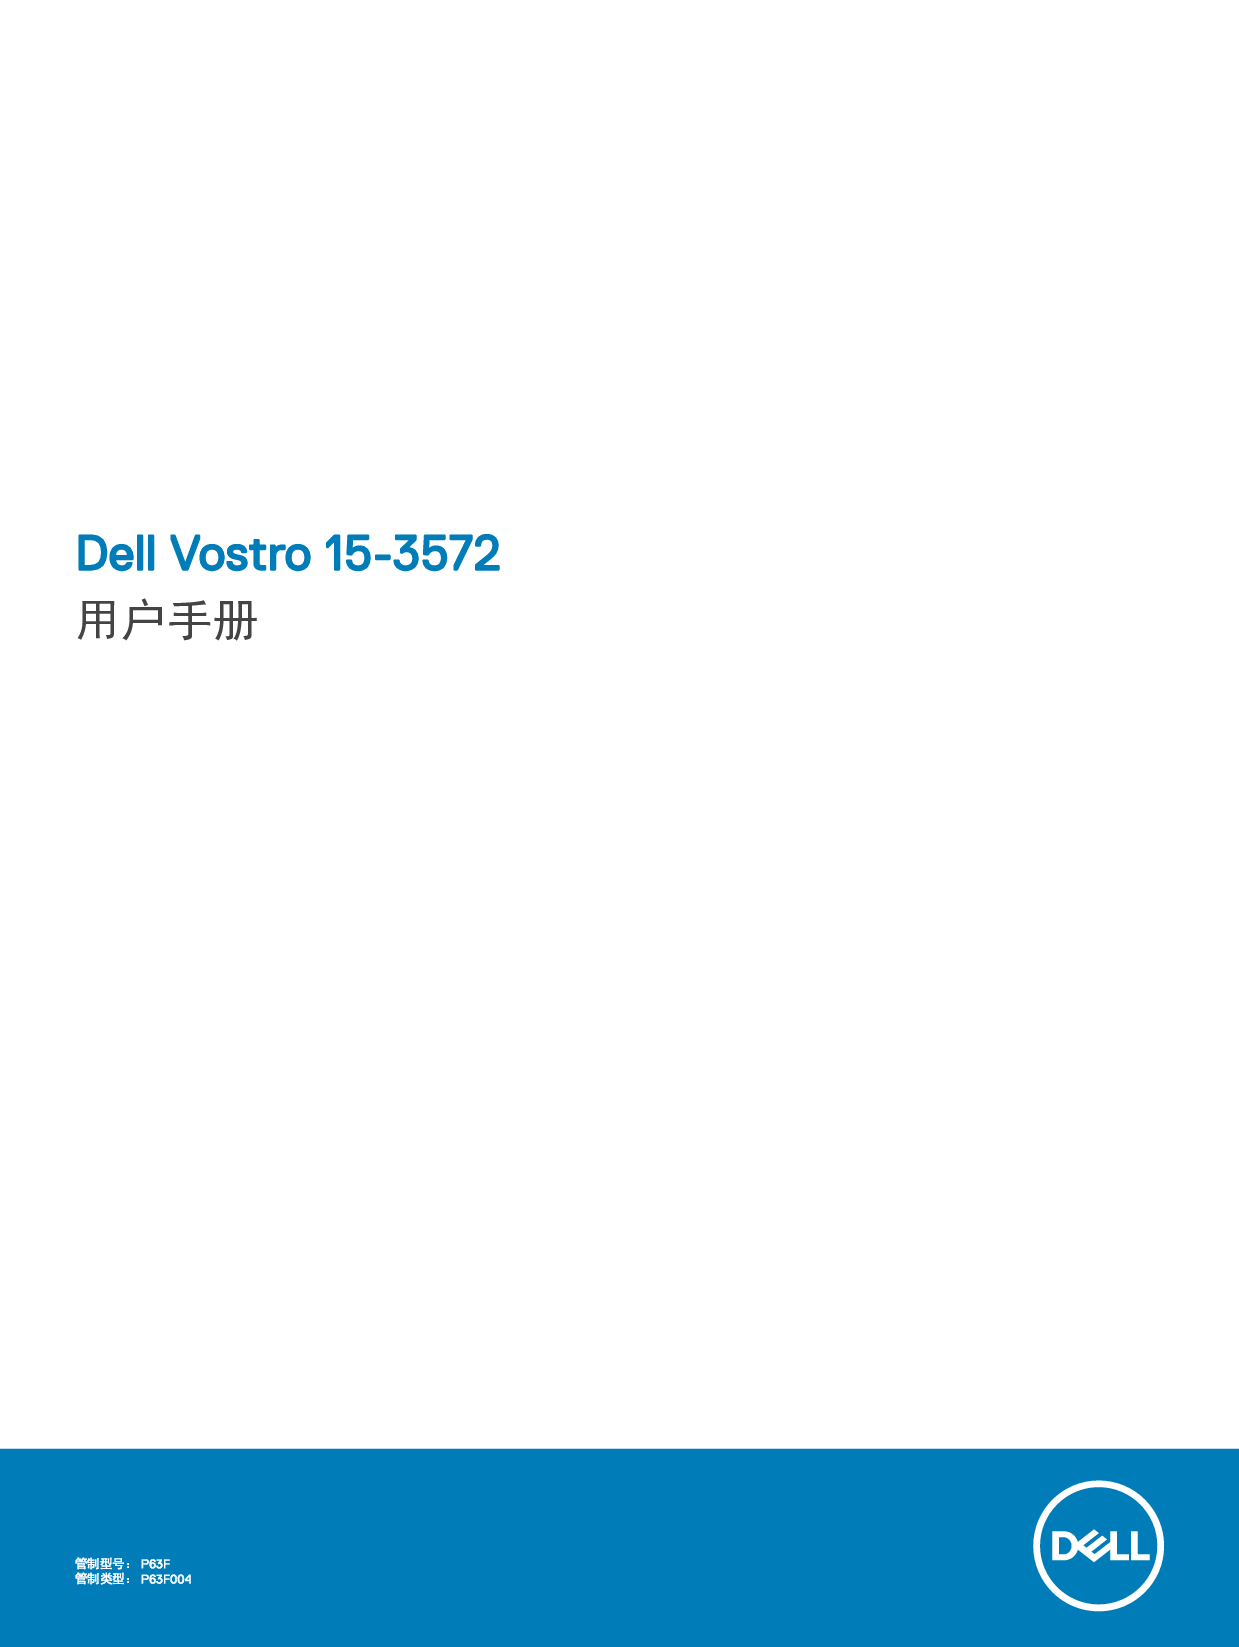 戴尔 Dell Vostro 15-3572 用户手册 封面